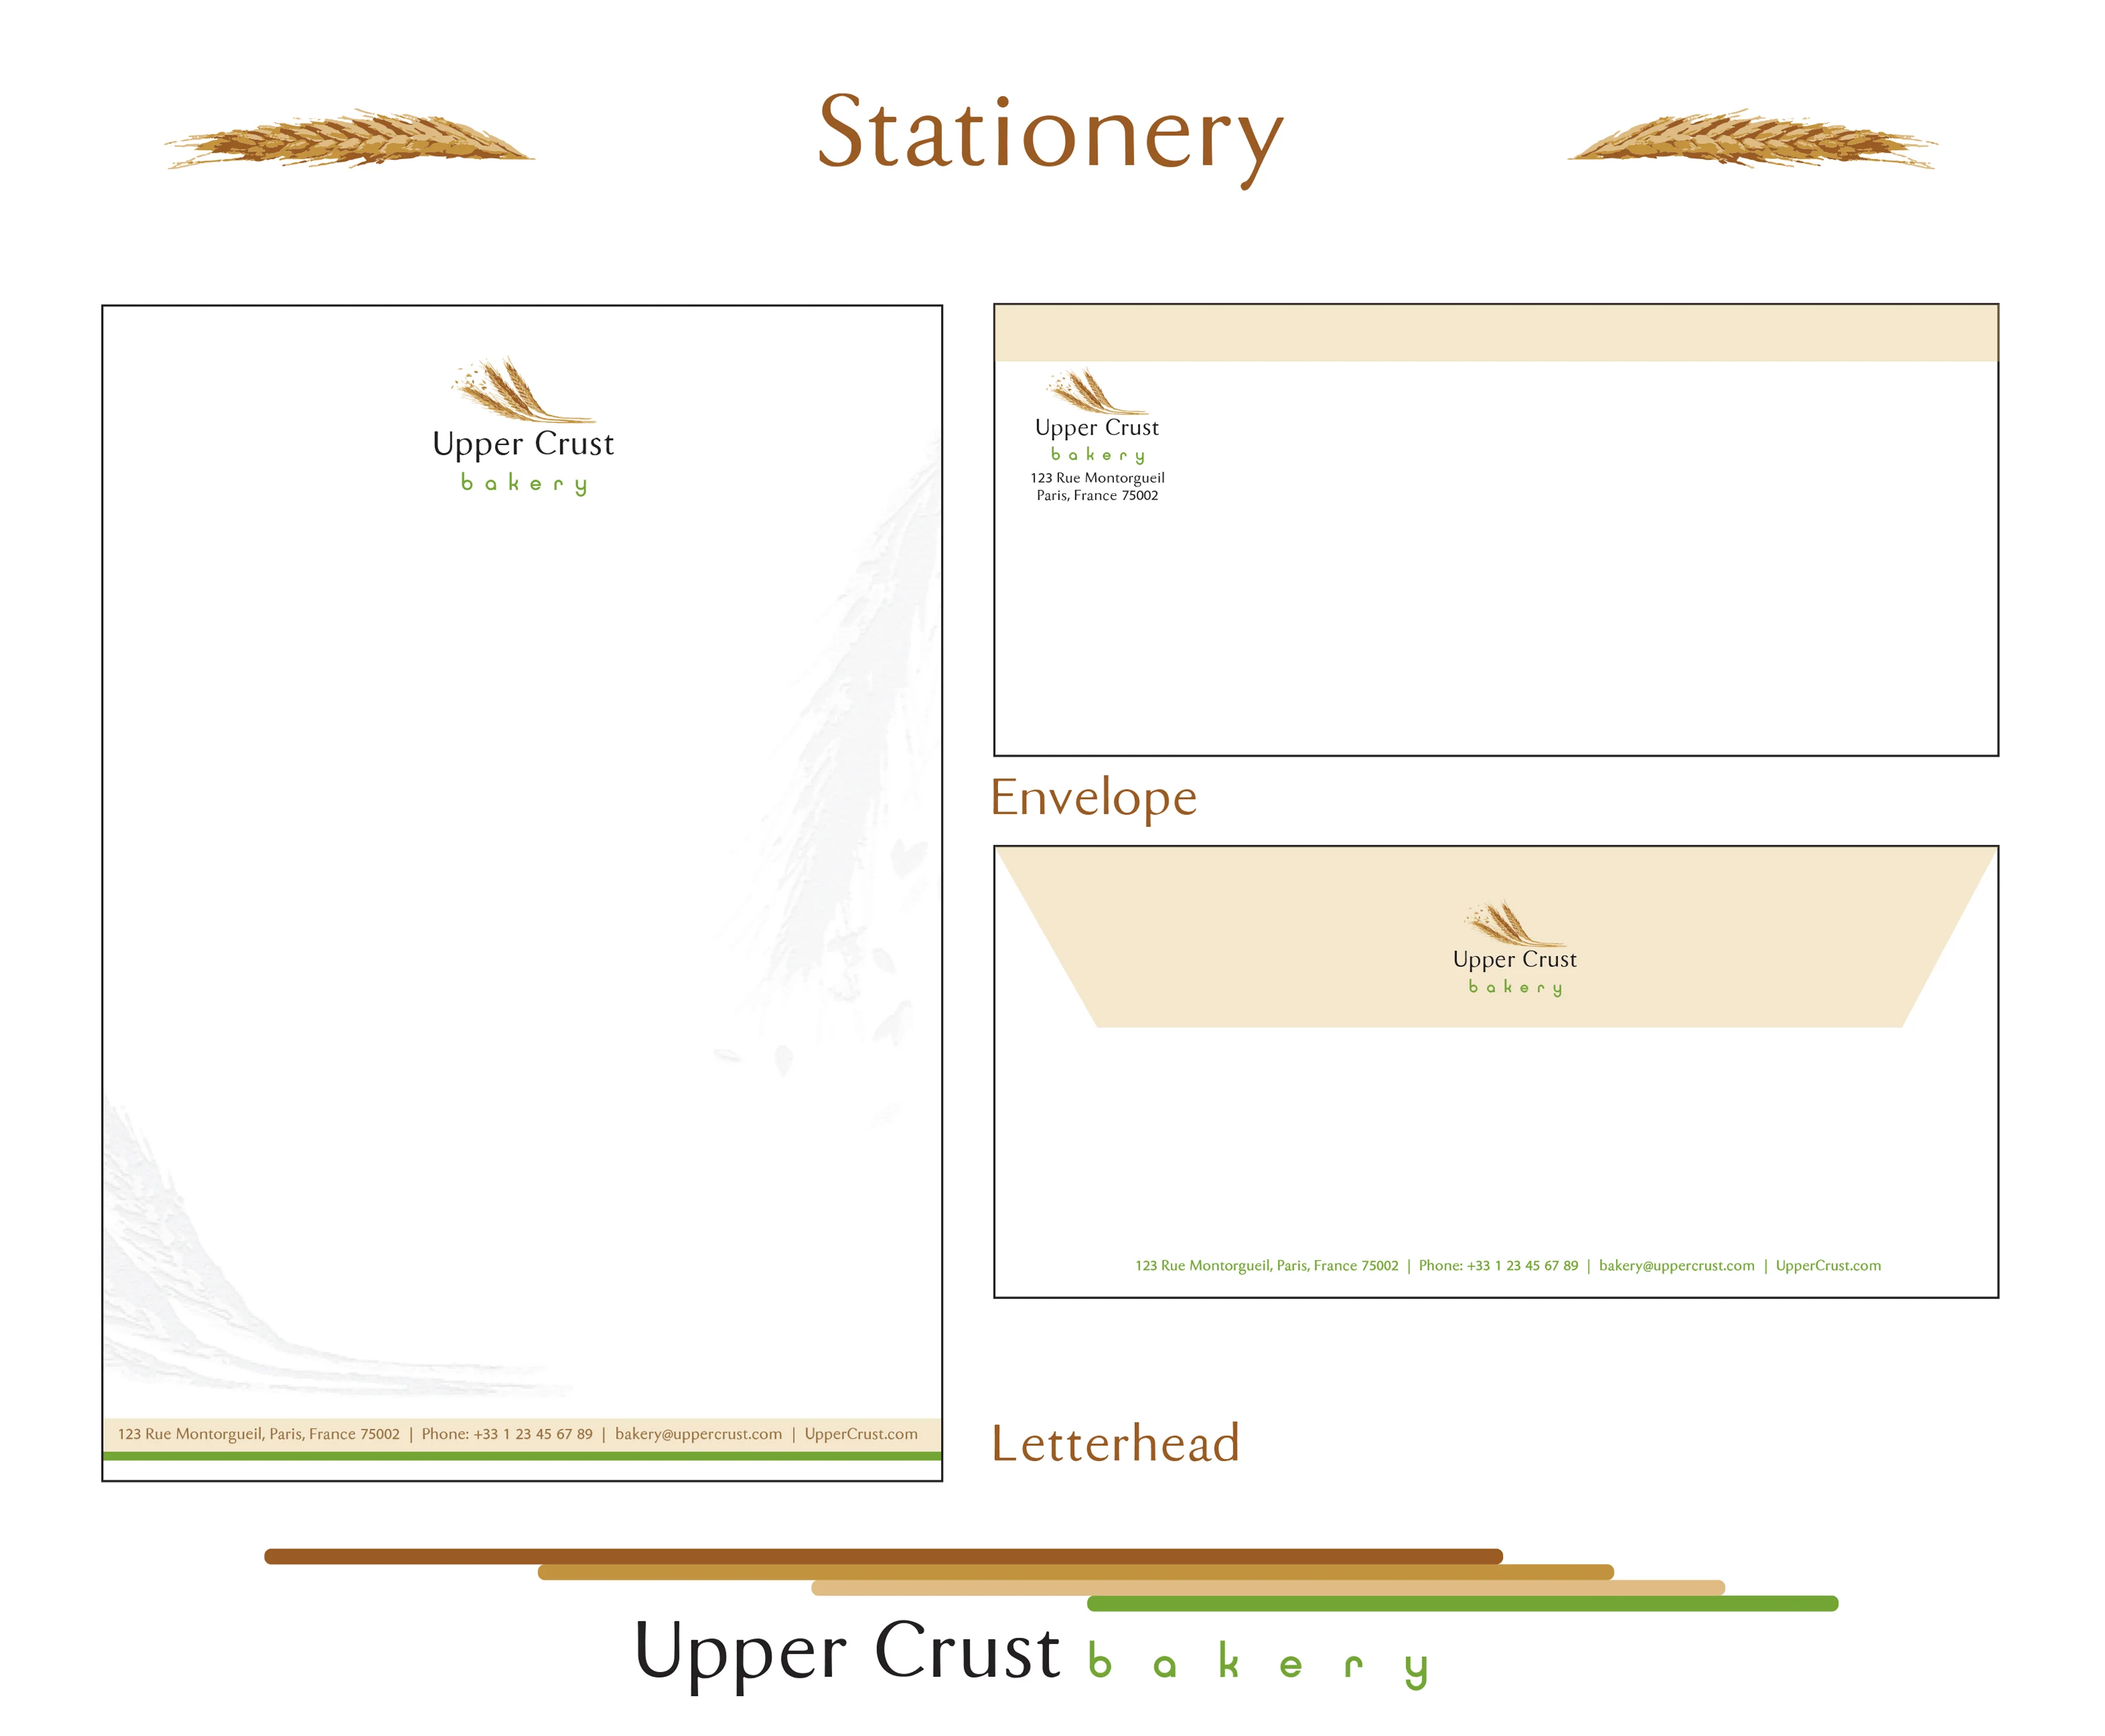 Upper Crust Bakery Branding Style Guide